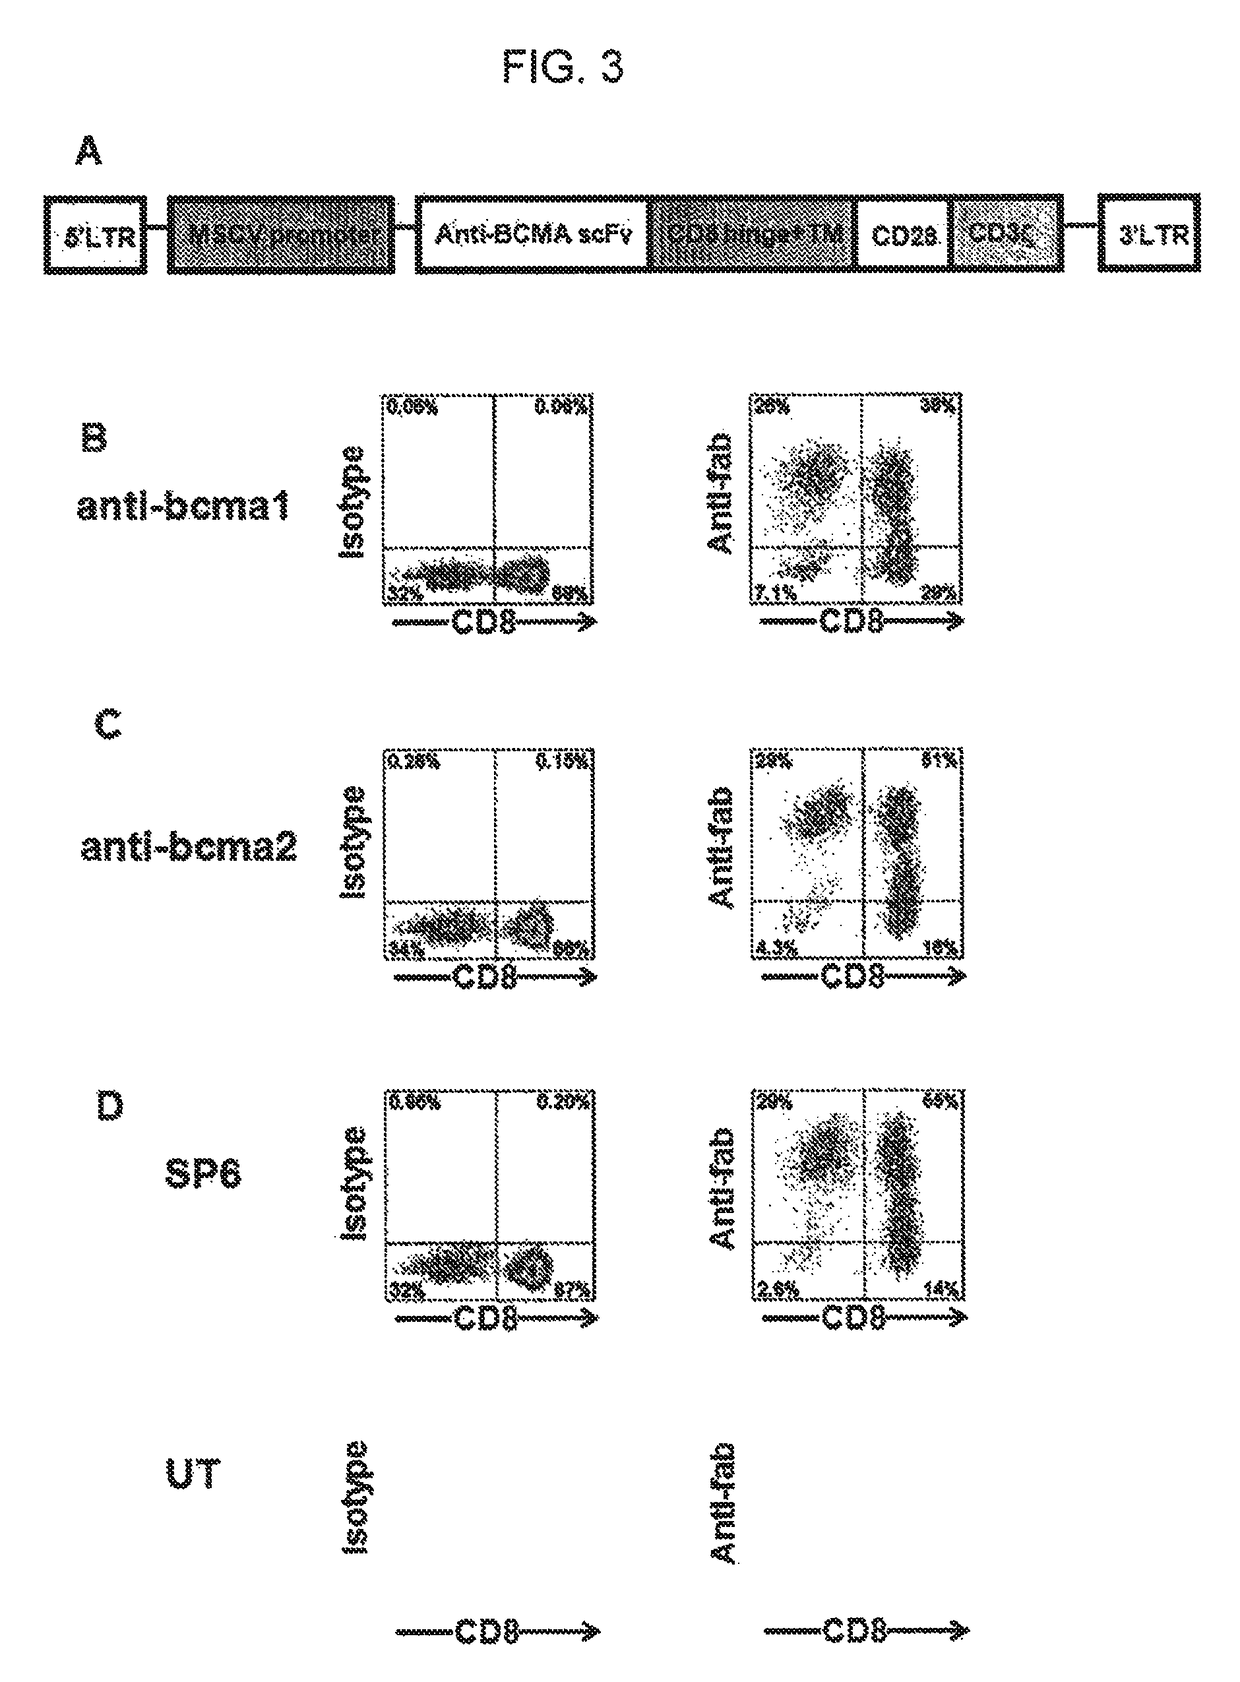 Chimeric antigen receptors targeting B-cell maturation antigen